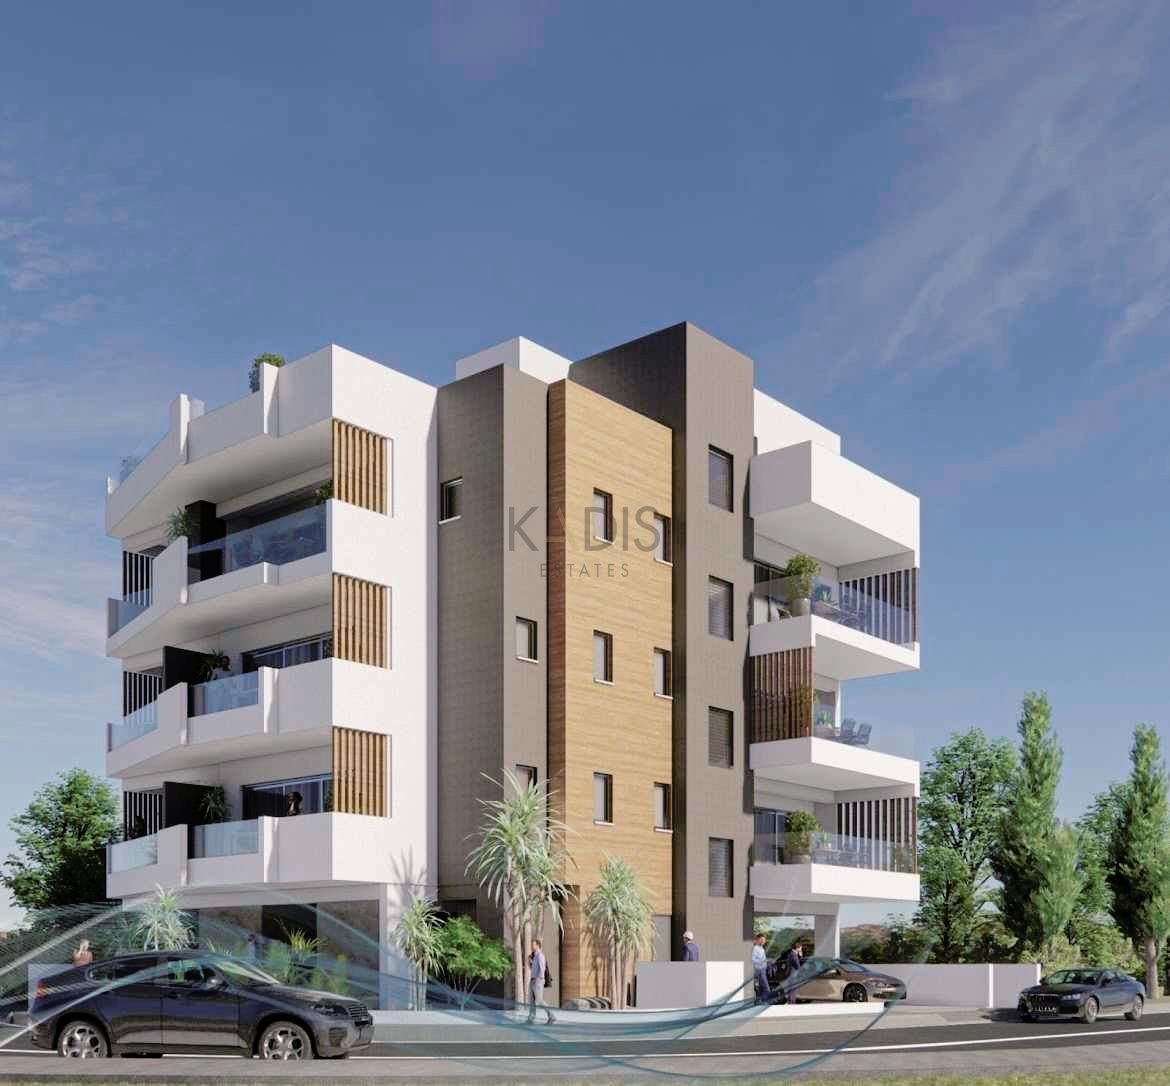 1 Bedroom Apartment for Sale in Latsia, Nicosia District